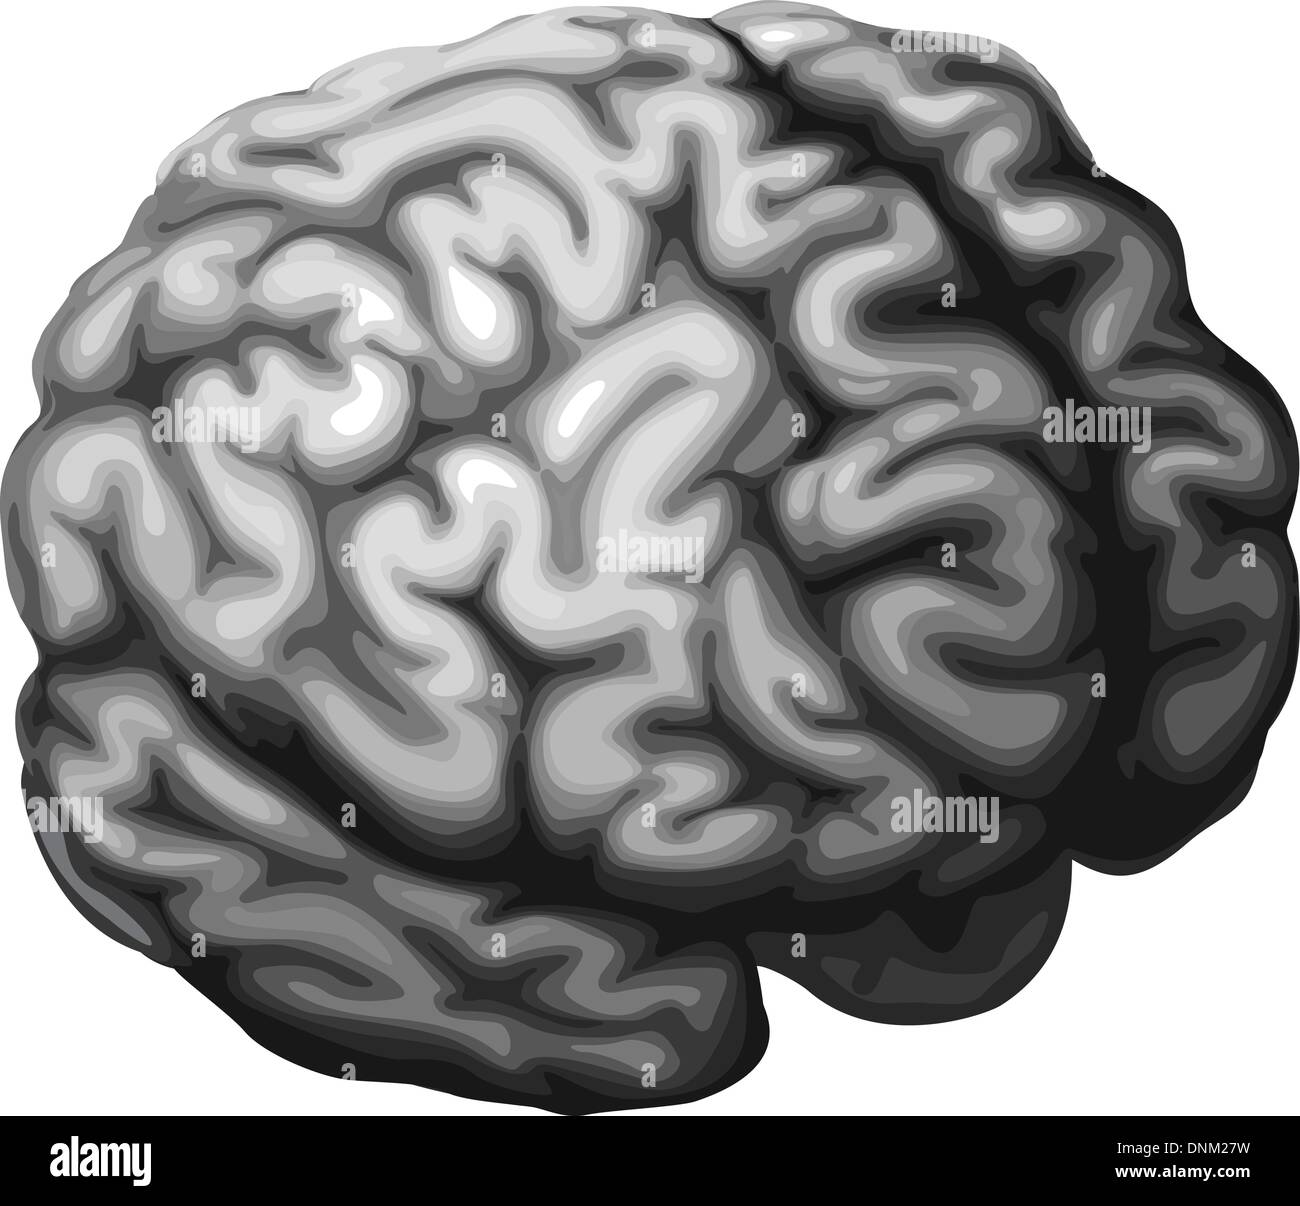 Illustration d'un cerveau monochrome dans des tons de gris Illustration de Vecteur